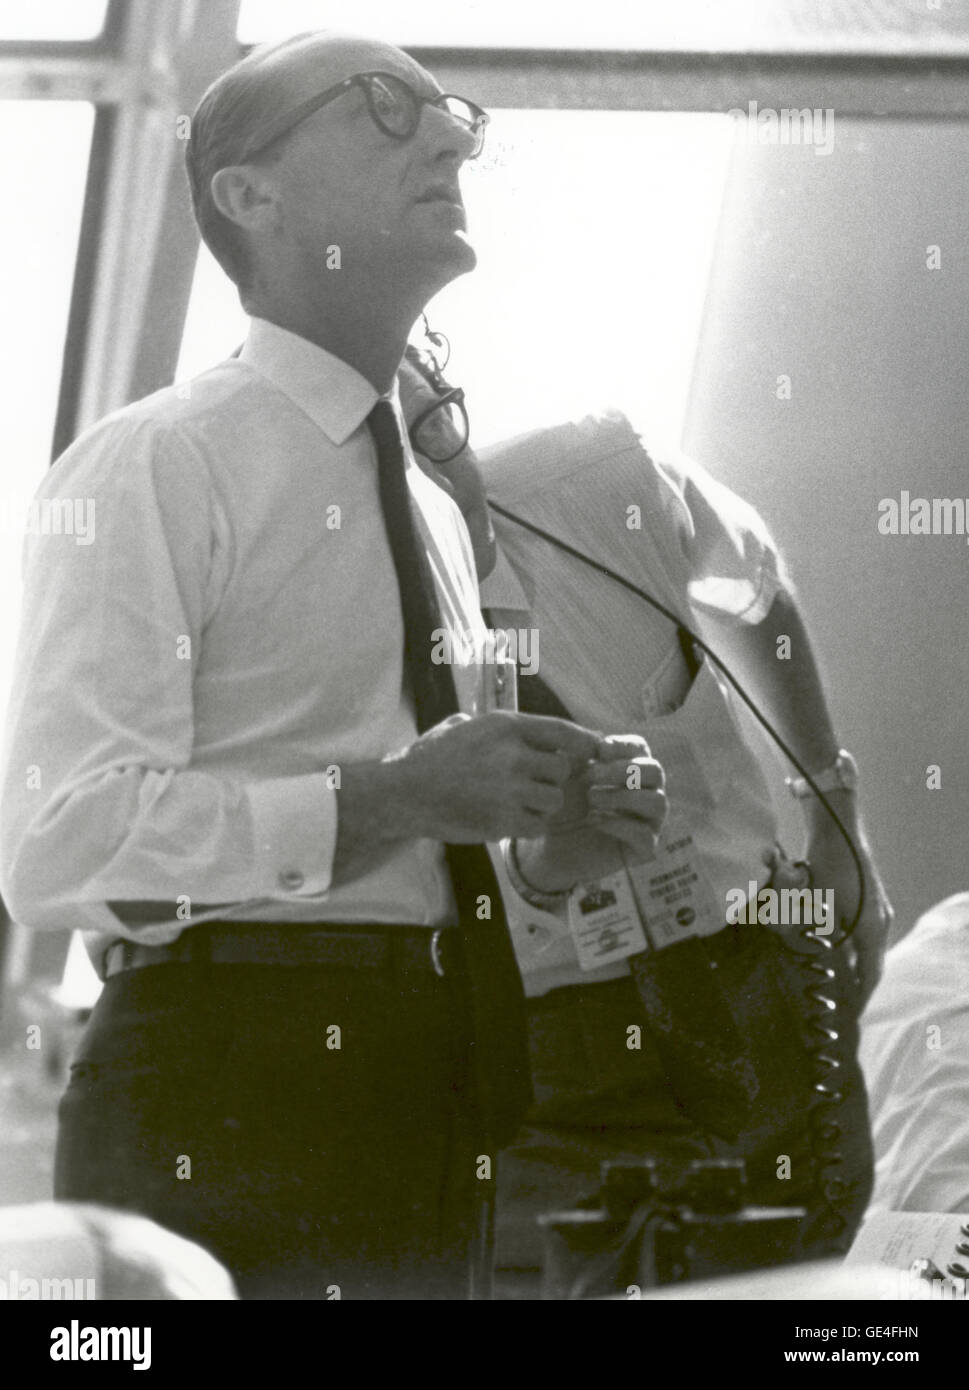 (16 Juli 1969) Dr. George E. Mueller, Associate Administrator für bemannte Raumfahrt, NASA, verfolgt den Fortschritt der Apollo 11-Mission. Dieses Foto wurde am Morgen des Starts am 16. Juli 1969 im Launch Control Center am Weltraumbahnhof aufgenommen.  Bild-Nr.: 108-KSC-69P-647 Stockfoto